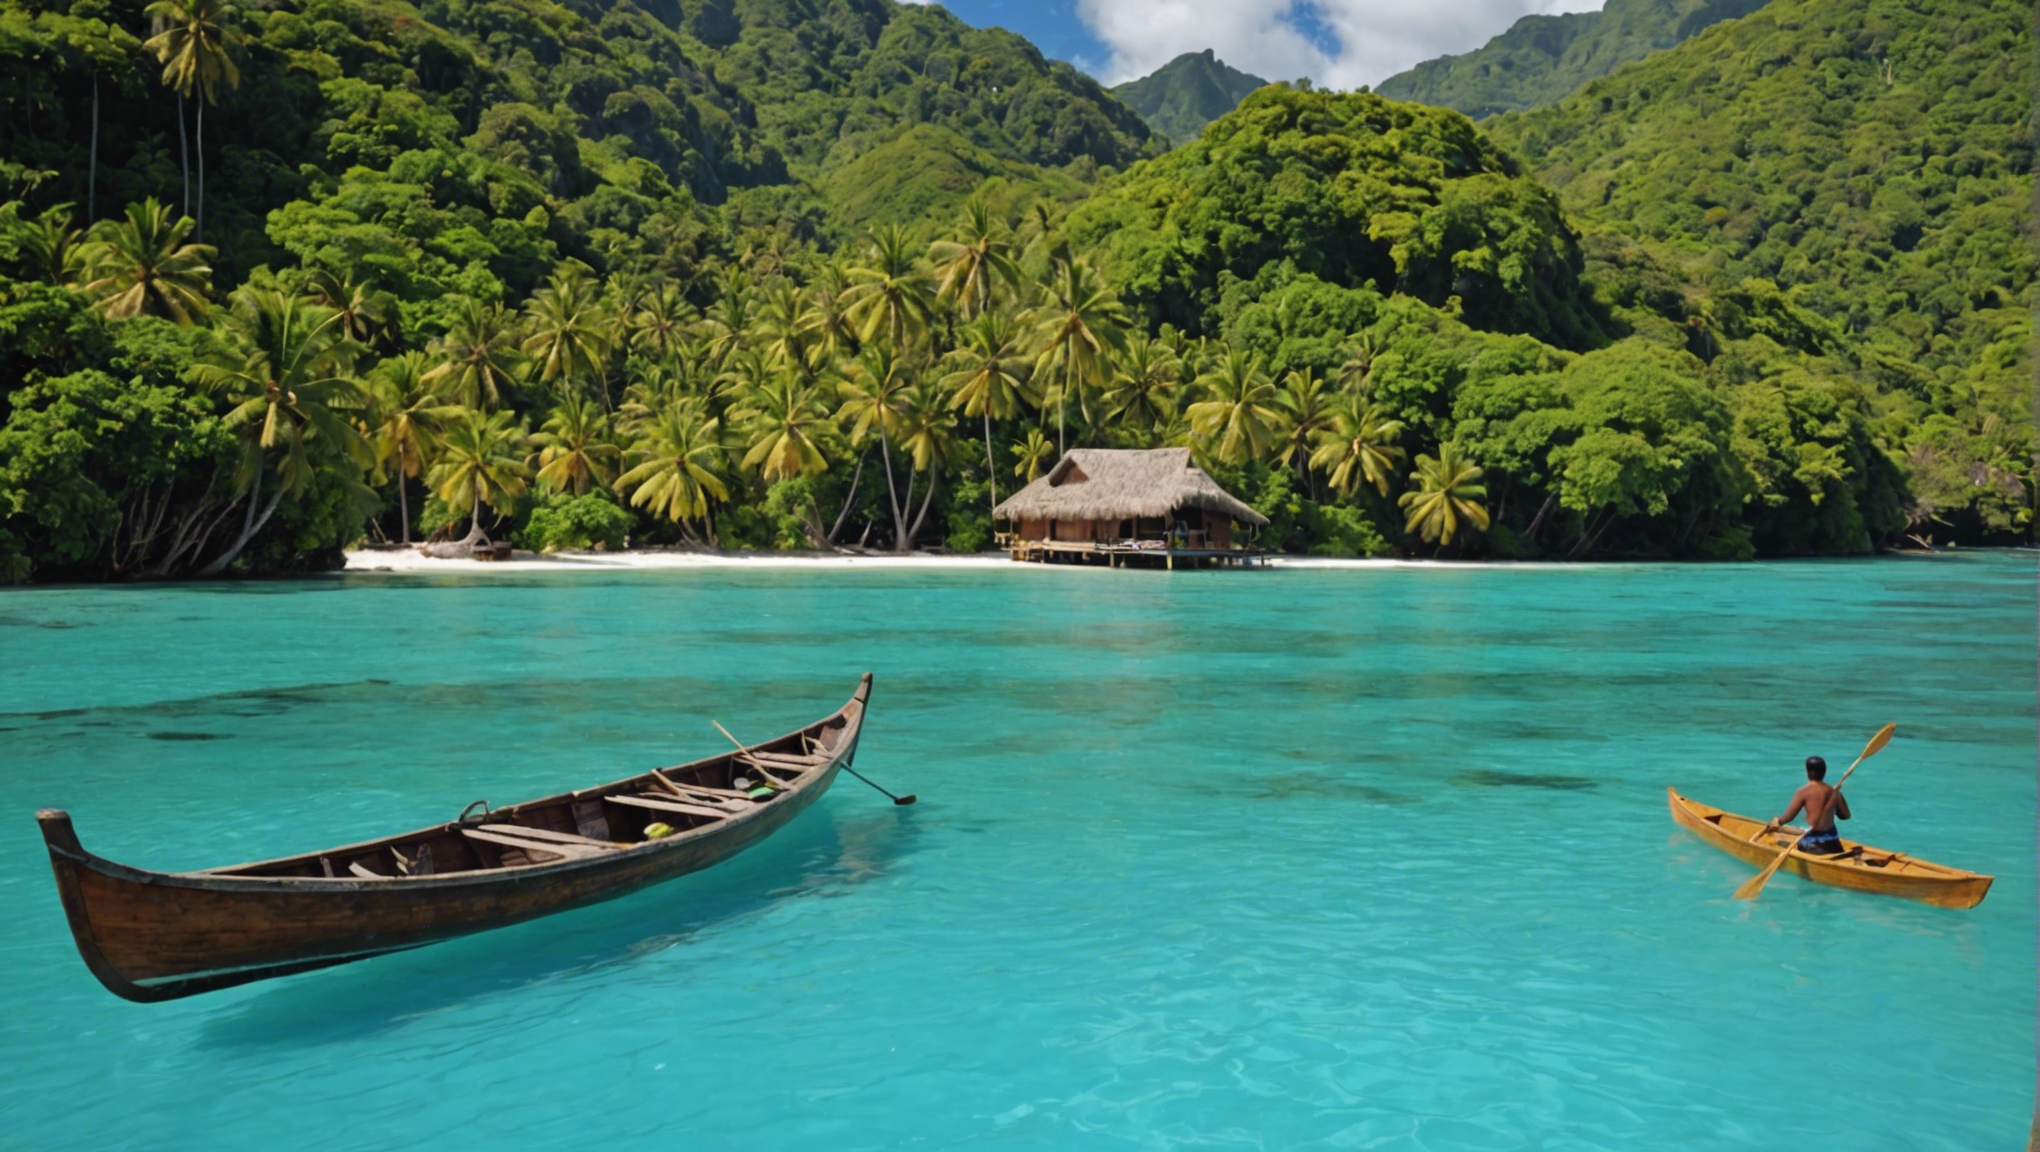 découvrez tahiti à travers une balade en pirogue dans son lagon et vivez une expérience inoubliable au cœur de la polynésie française.